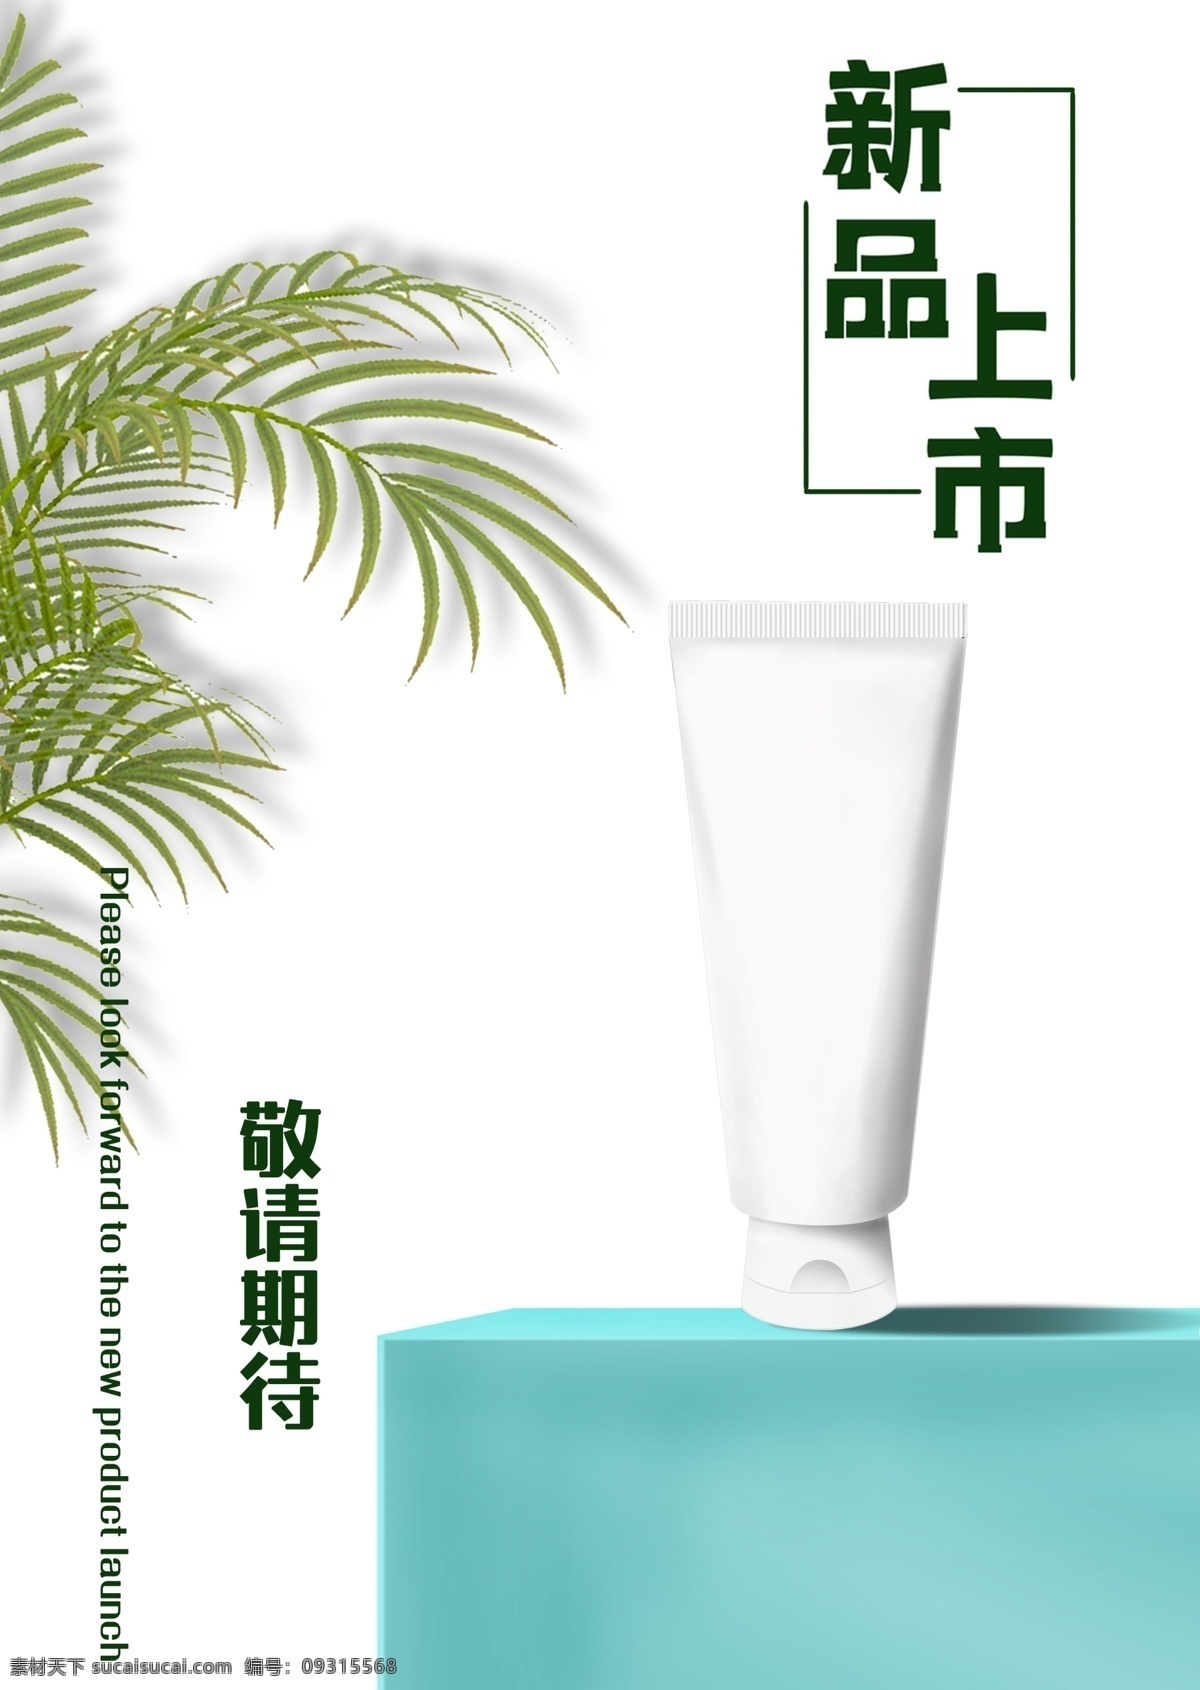 洗面奶 新品上市 宣传 广告 凤尾竹